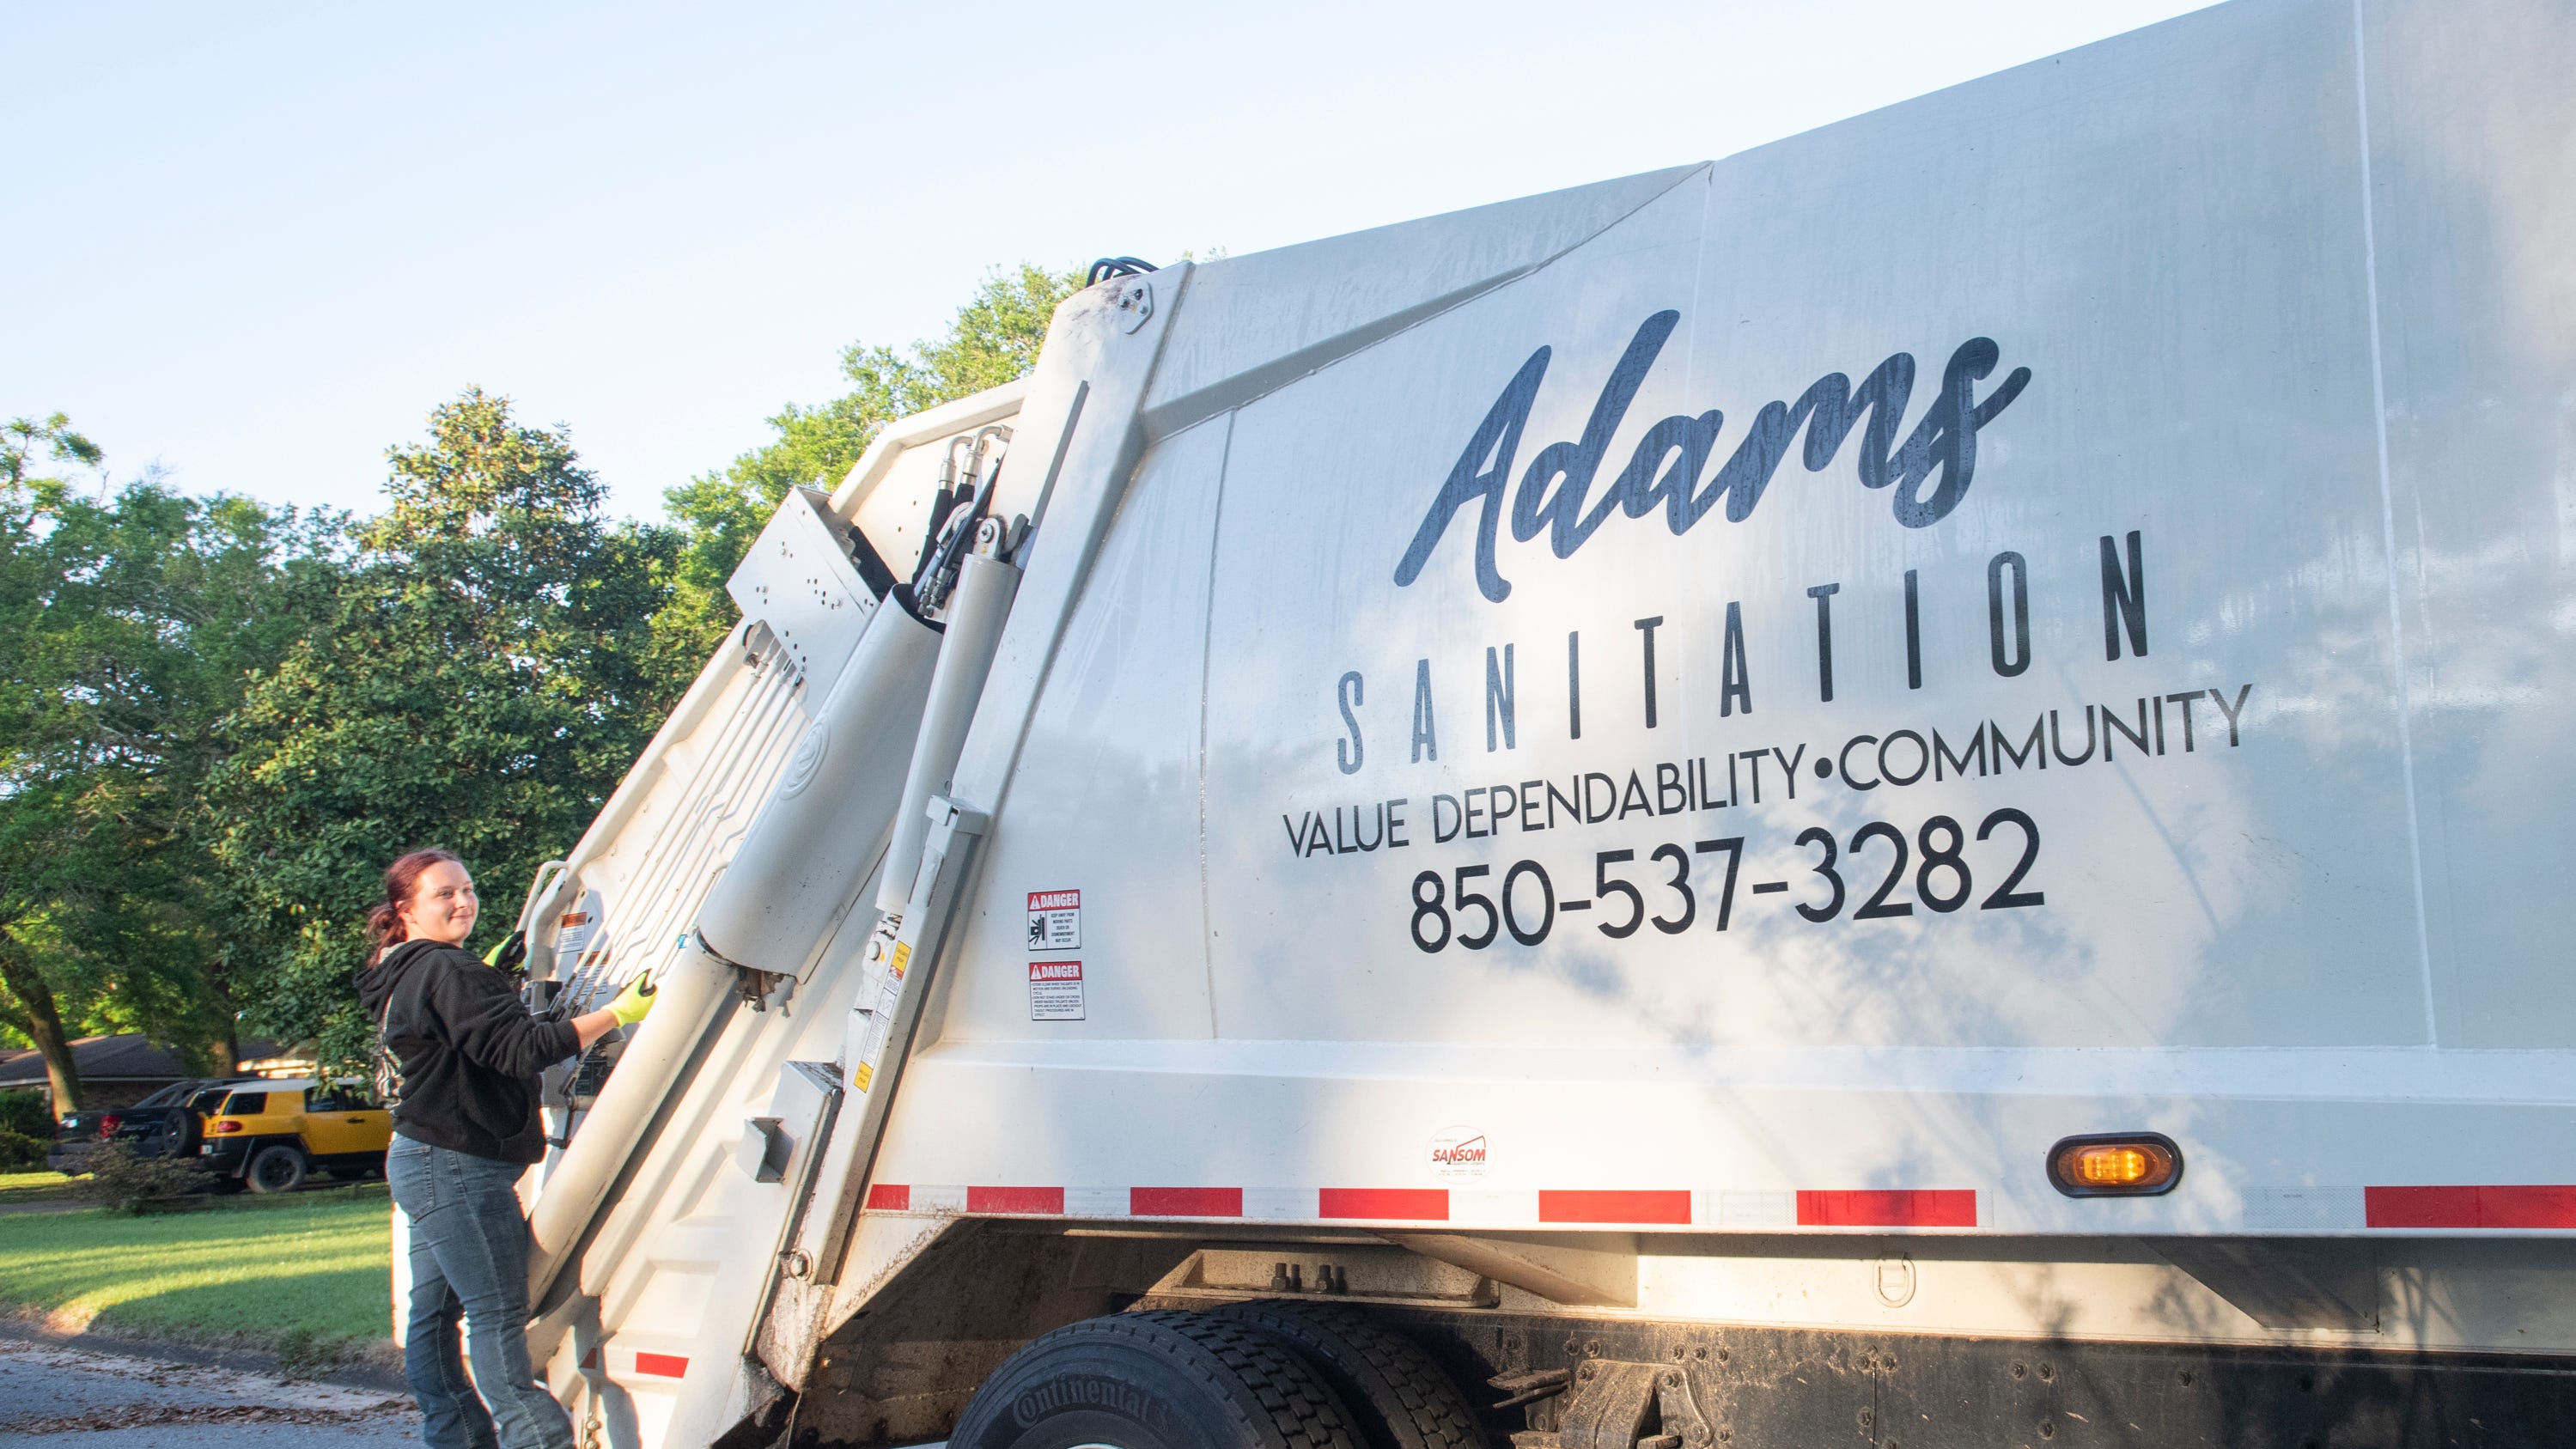 Adams Sanitation wins bid to pick up trash for Santa Rosa schools, beating out Waste Pro